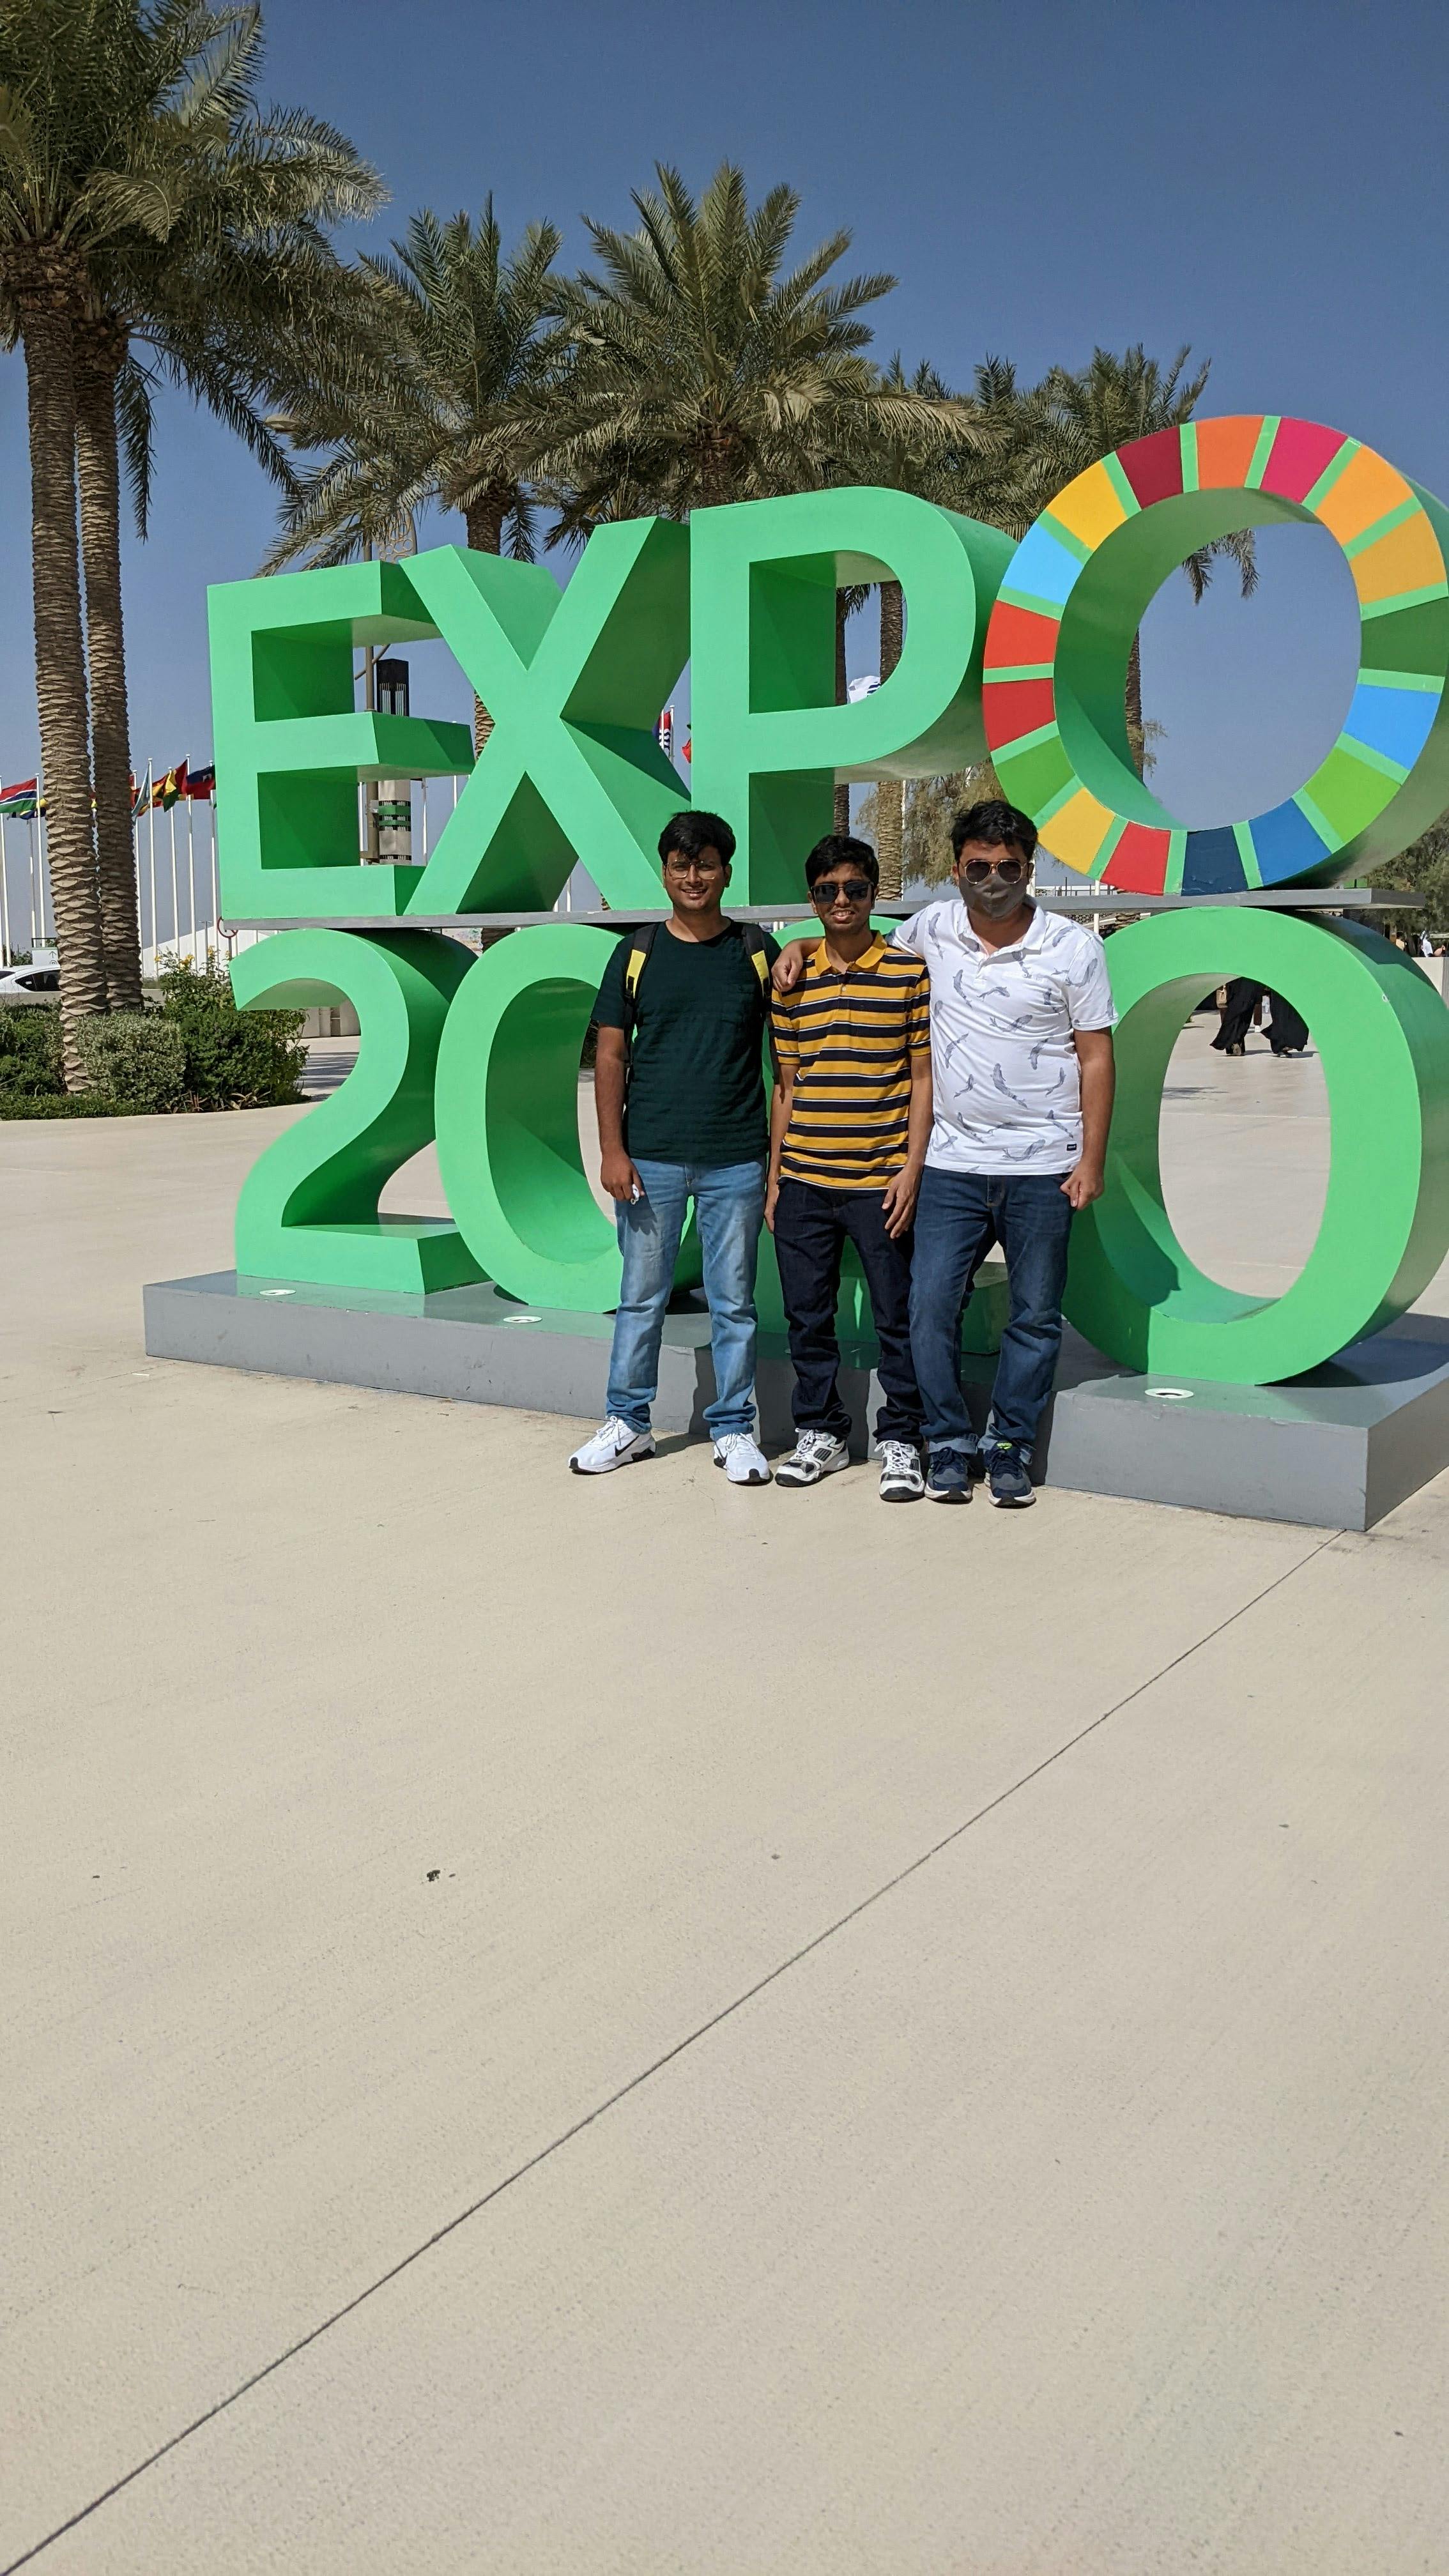 At Expo